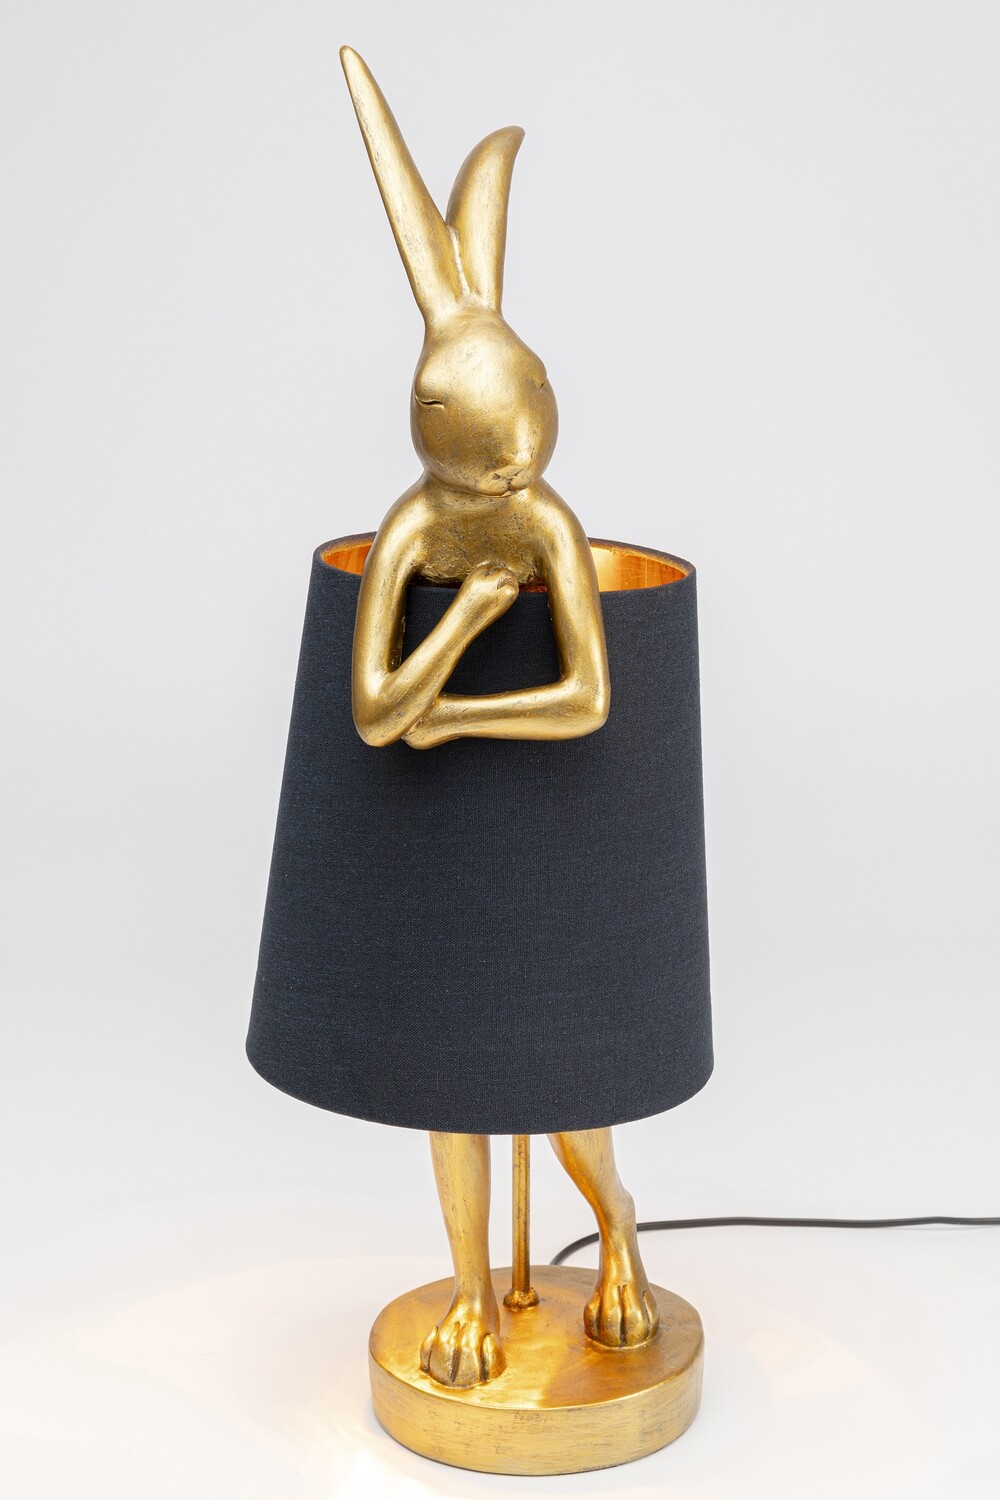 Tischleuchte Animal Rabbit Gold/Schwarz 68cm